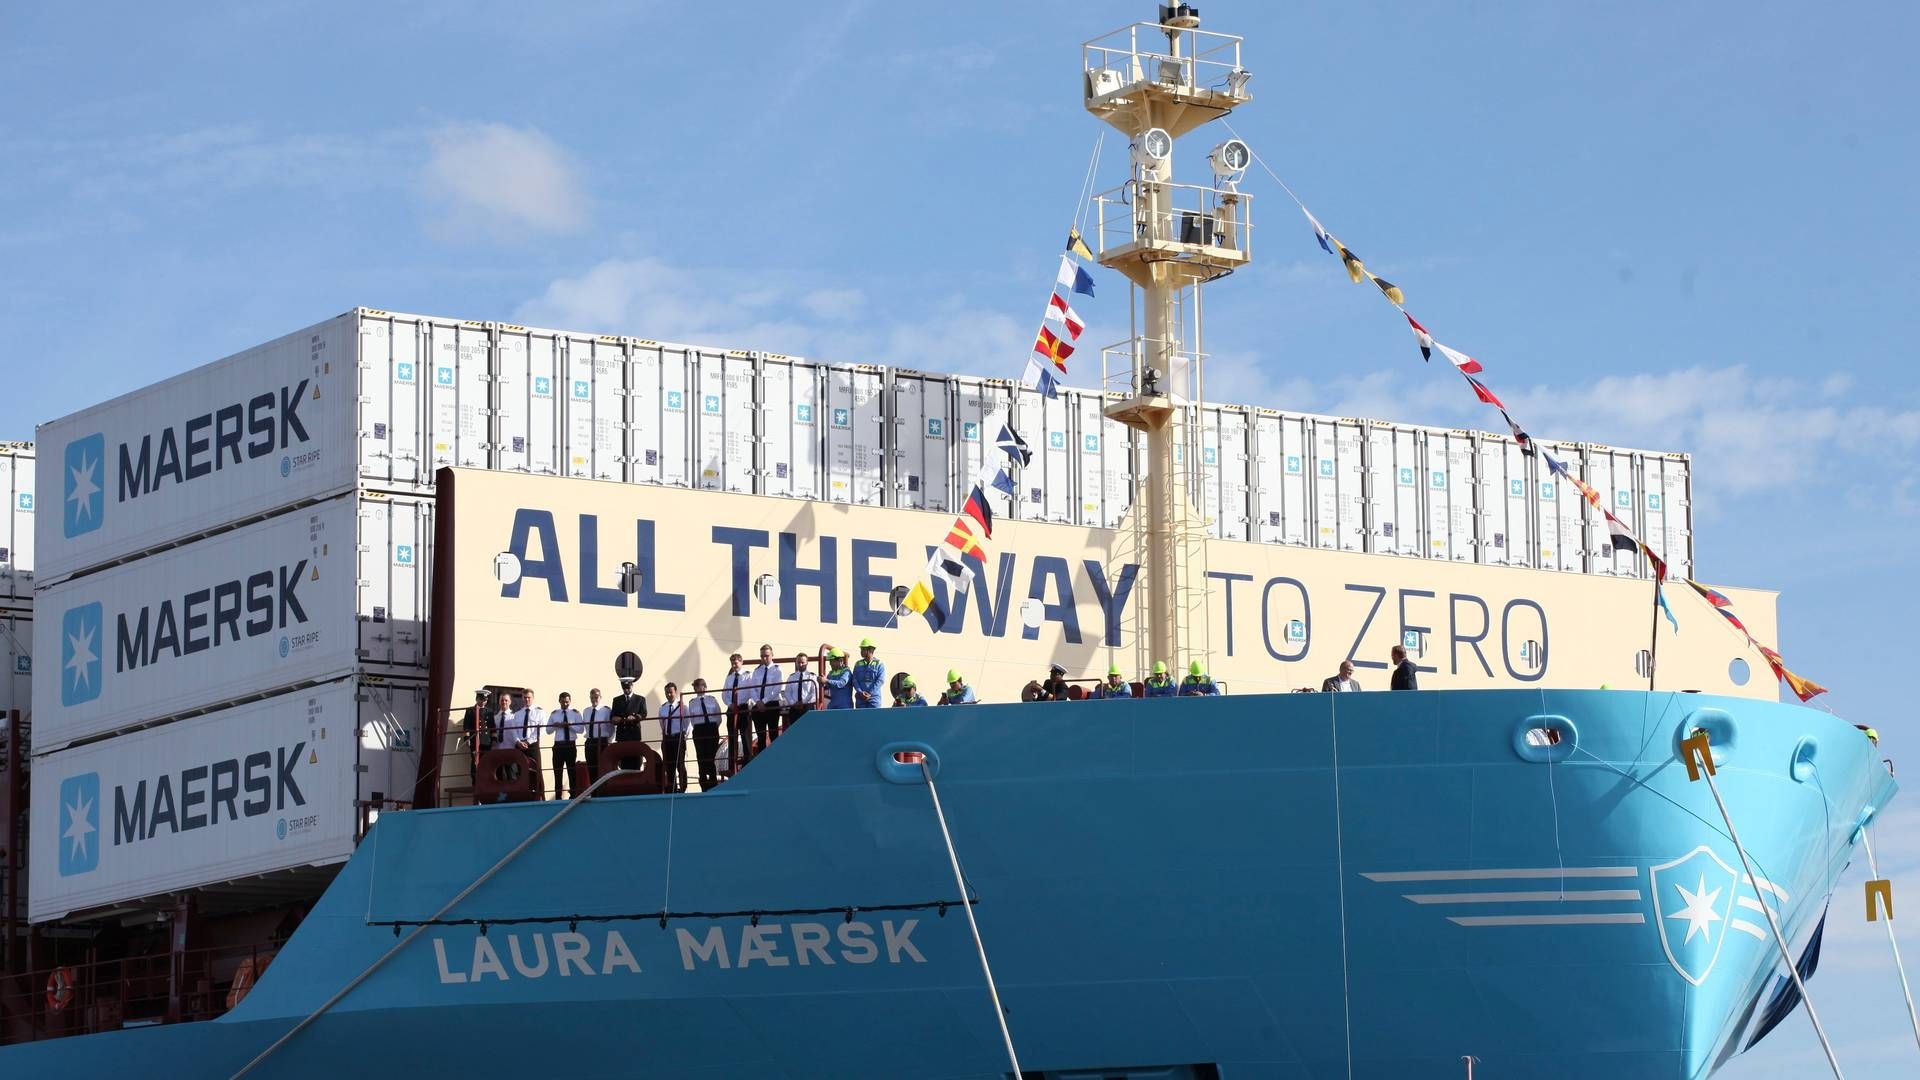 Rederiet Mærsks første containerskib, Laura Mærsk, til grøn metanol. | Foto: Steffen Trumpf/AP/Ritzau Scanpix